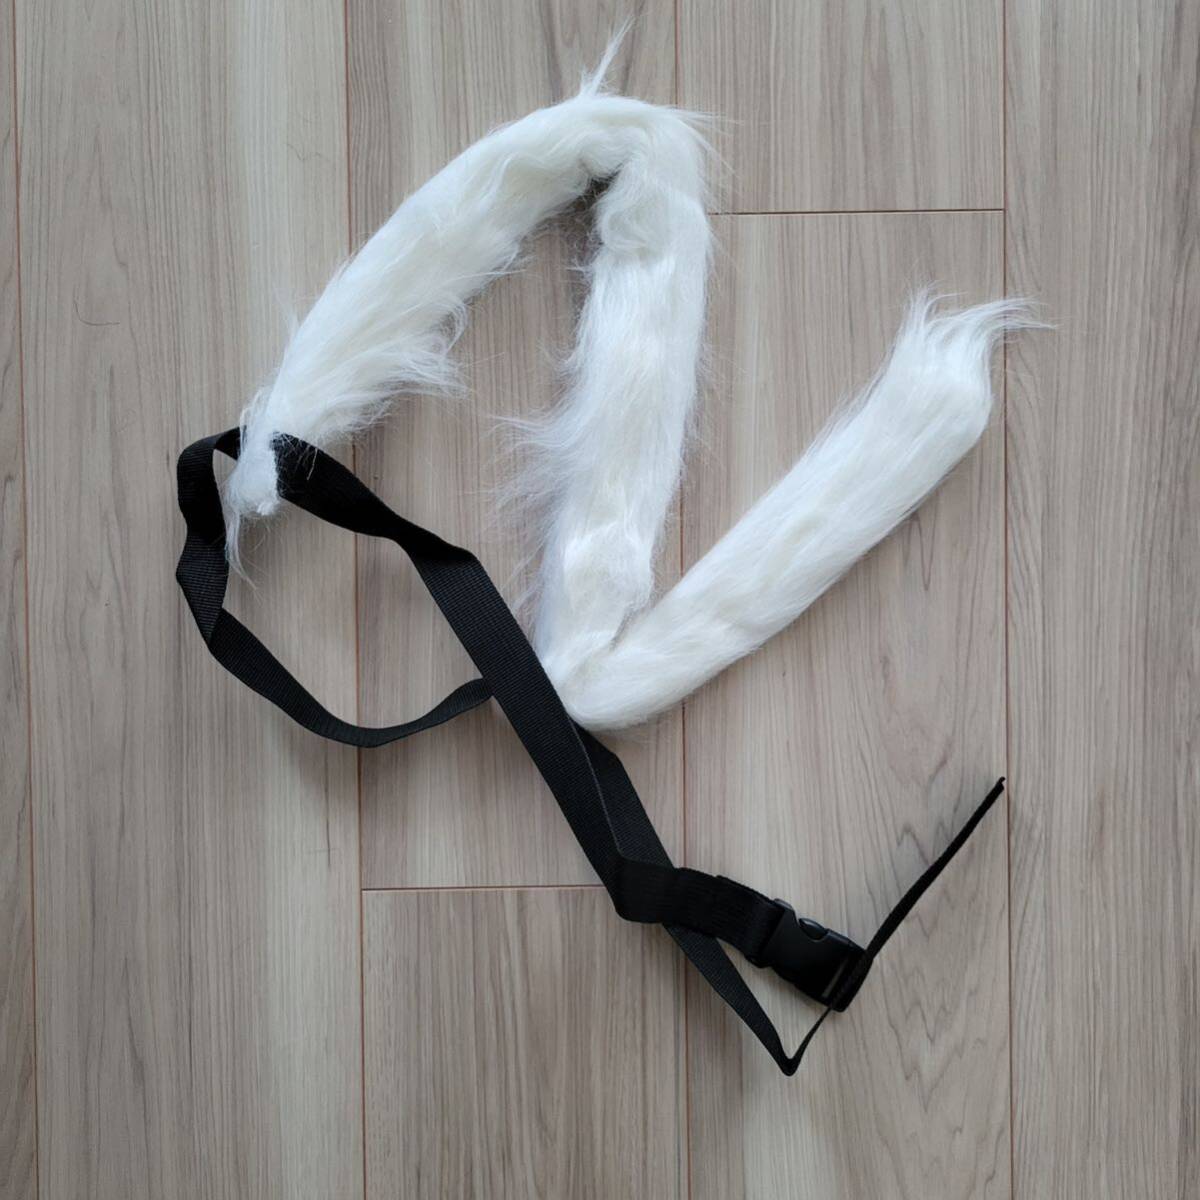 猫耳 カチューシャ しっぽ コスプレ ハロウィン 白猫 猫 仮装 コスチューム